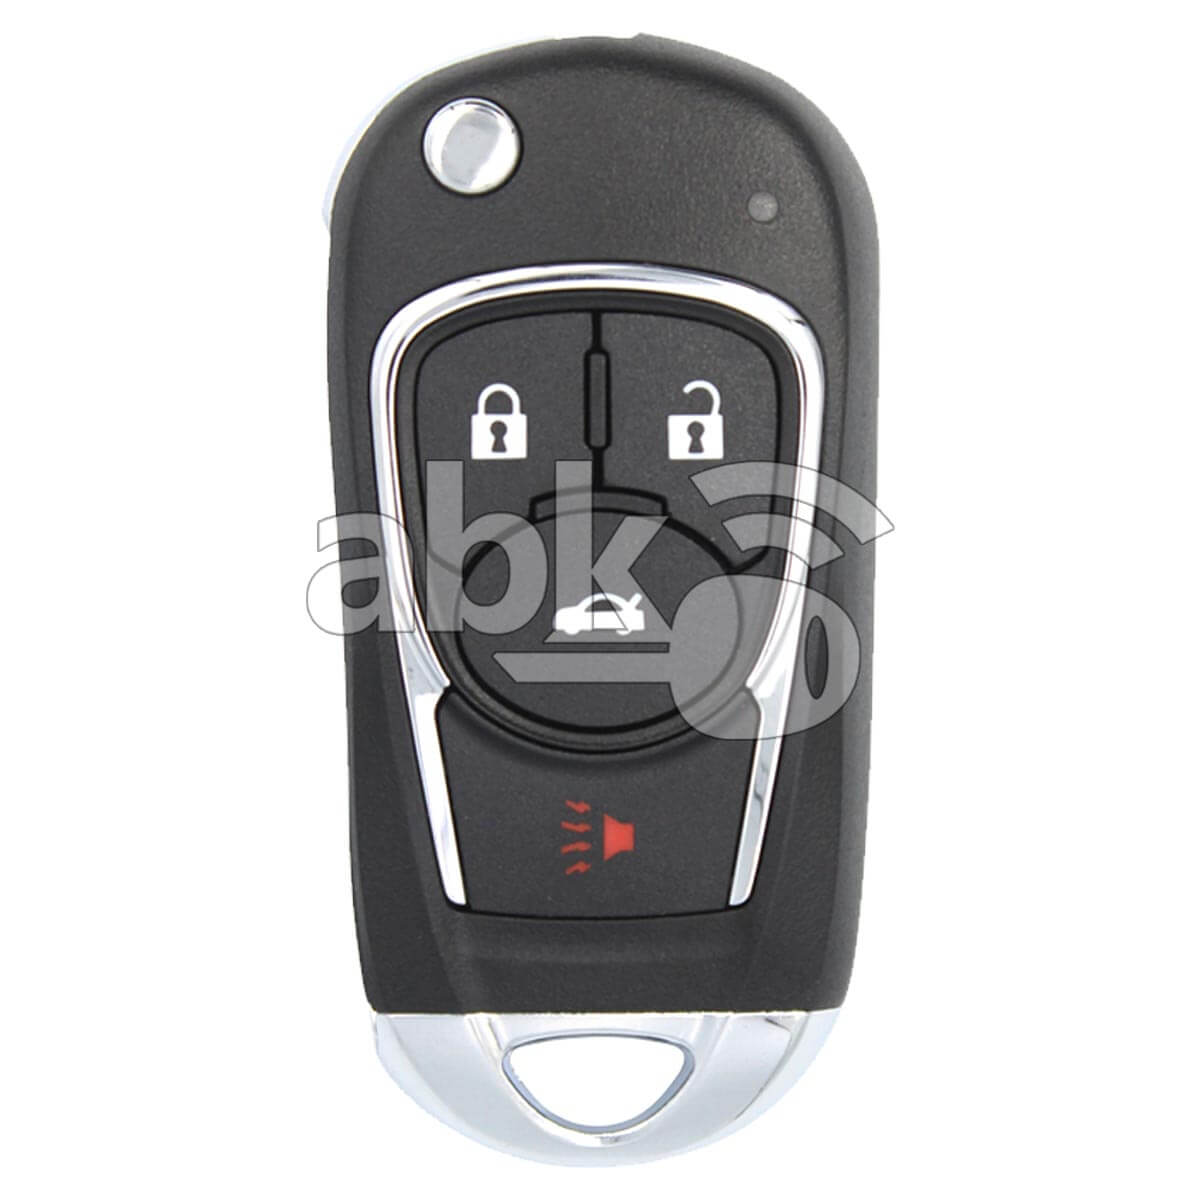 Xhorse VVDI Key Tool VVDI2 Buick Style Wired Flip Remote 4Buttons XKBU02EN - ABK-1015-XKBU02EN - 